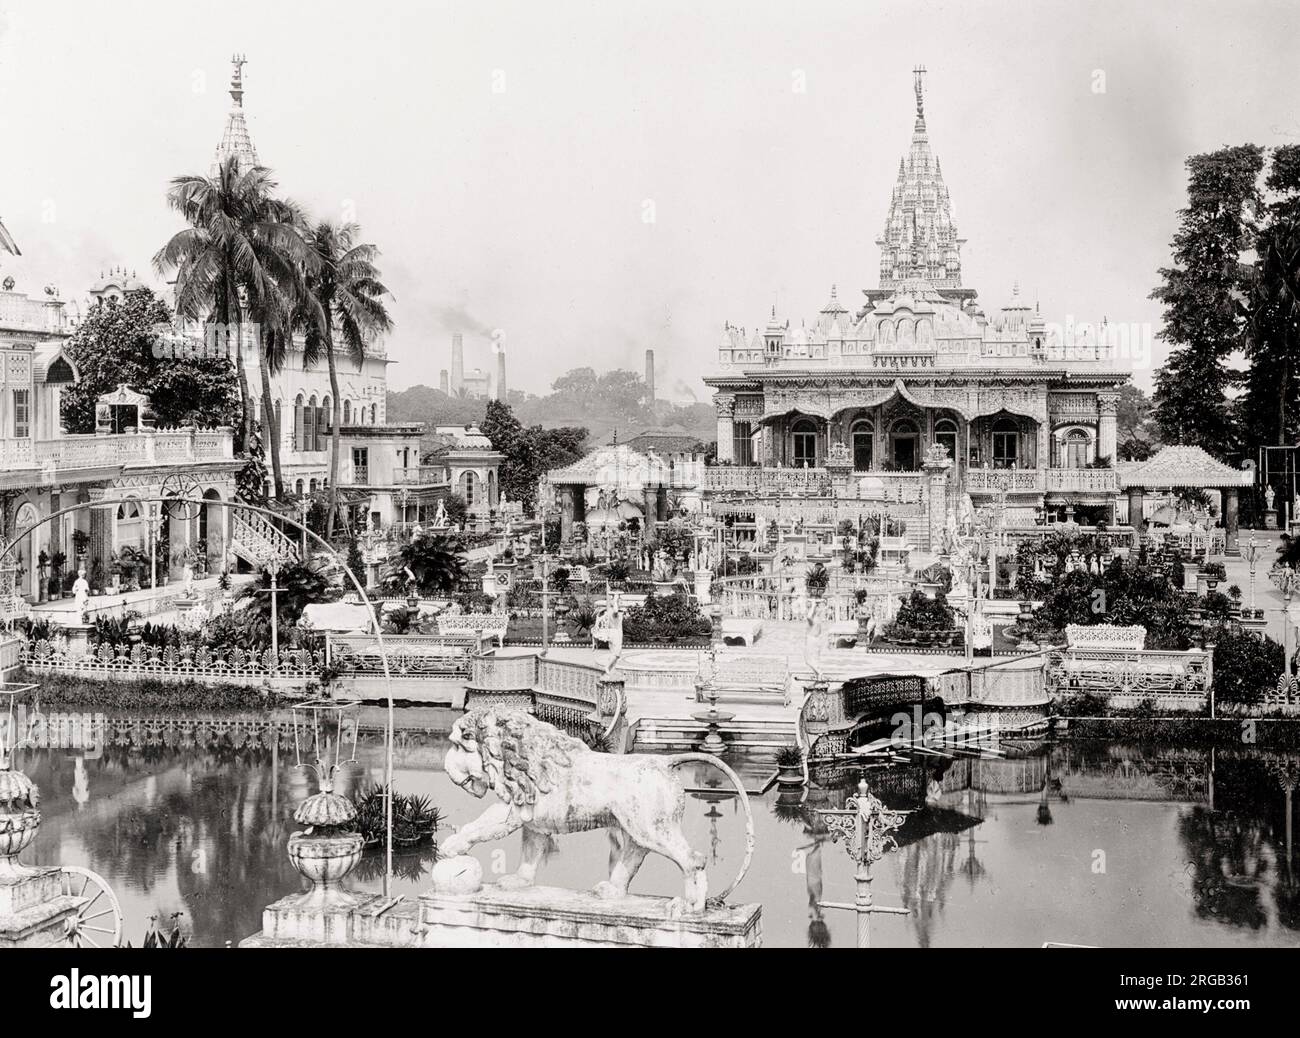 Vintage 19th century photograph: Parasnath Jain Temple in Kolkata, Calcutta, India. Stock Photo